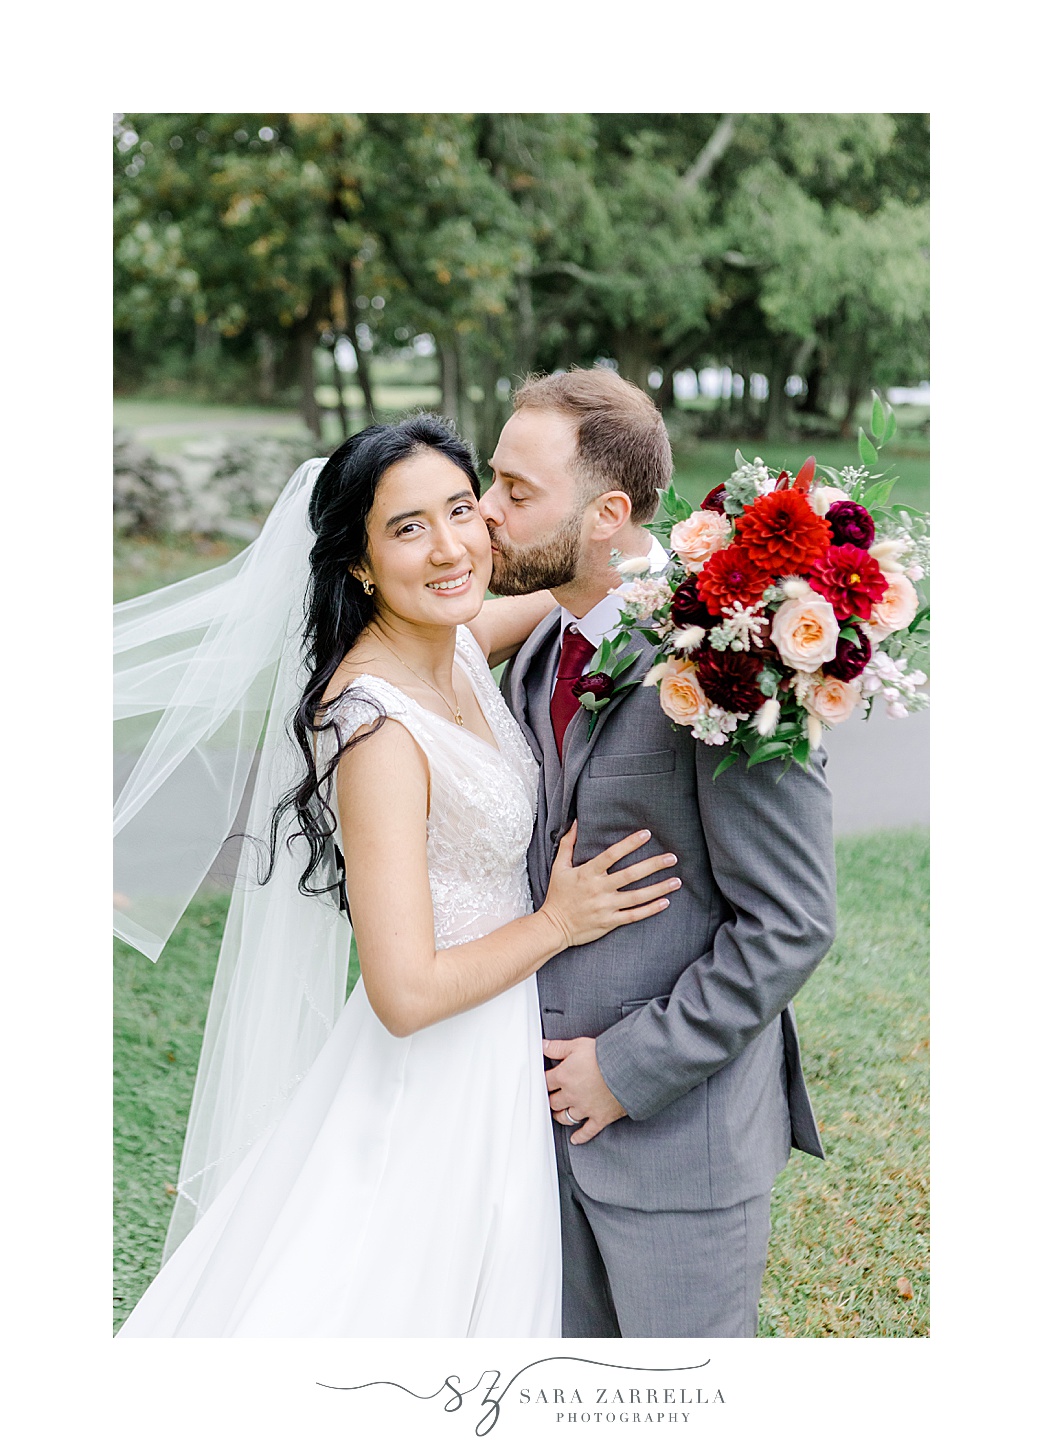 groom kisses bride's cheek with veil floating behind her